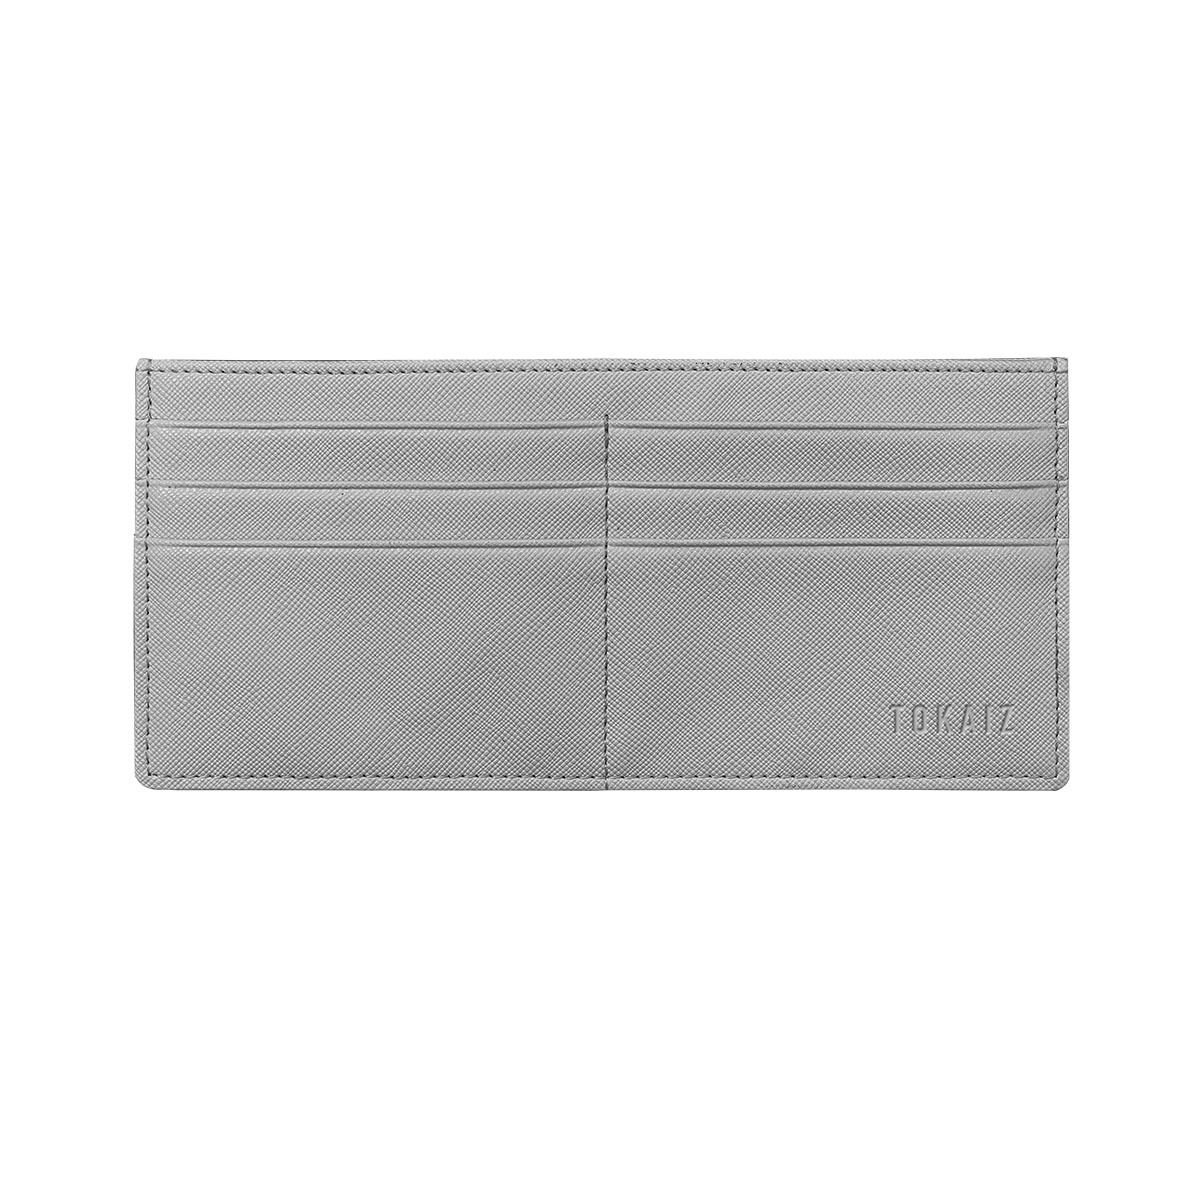 薄型長財布 レディース 薄い スキミング防止 ブランド 使いやすい 大容量 薄型 軽量 カードケース...